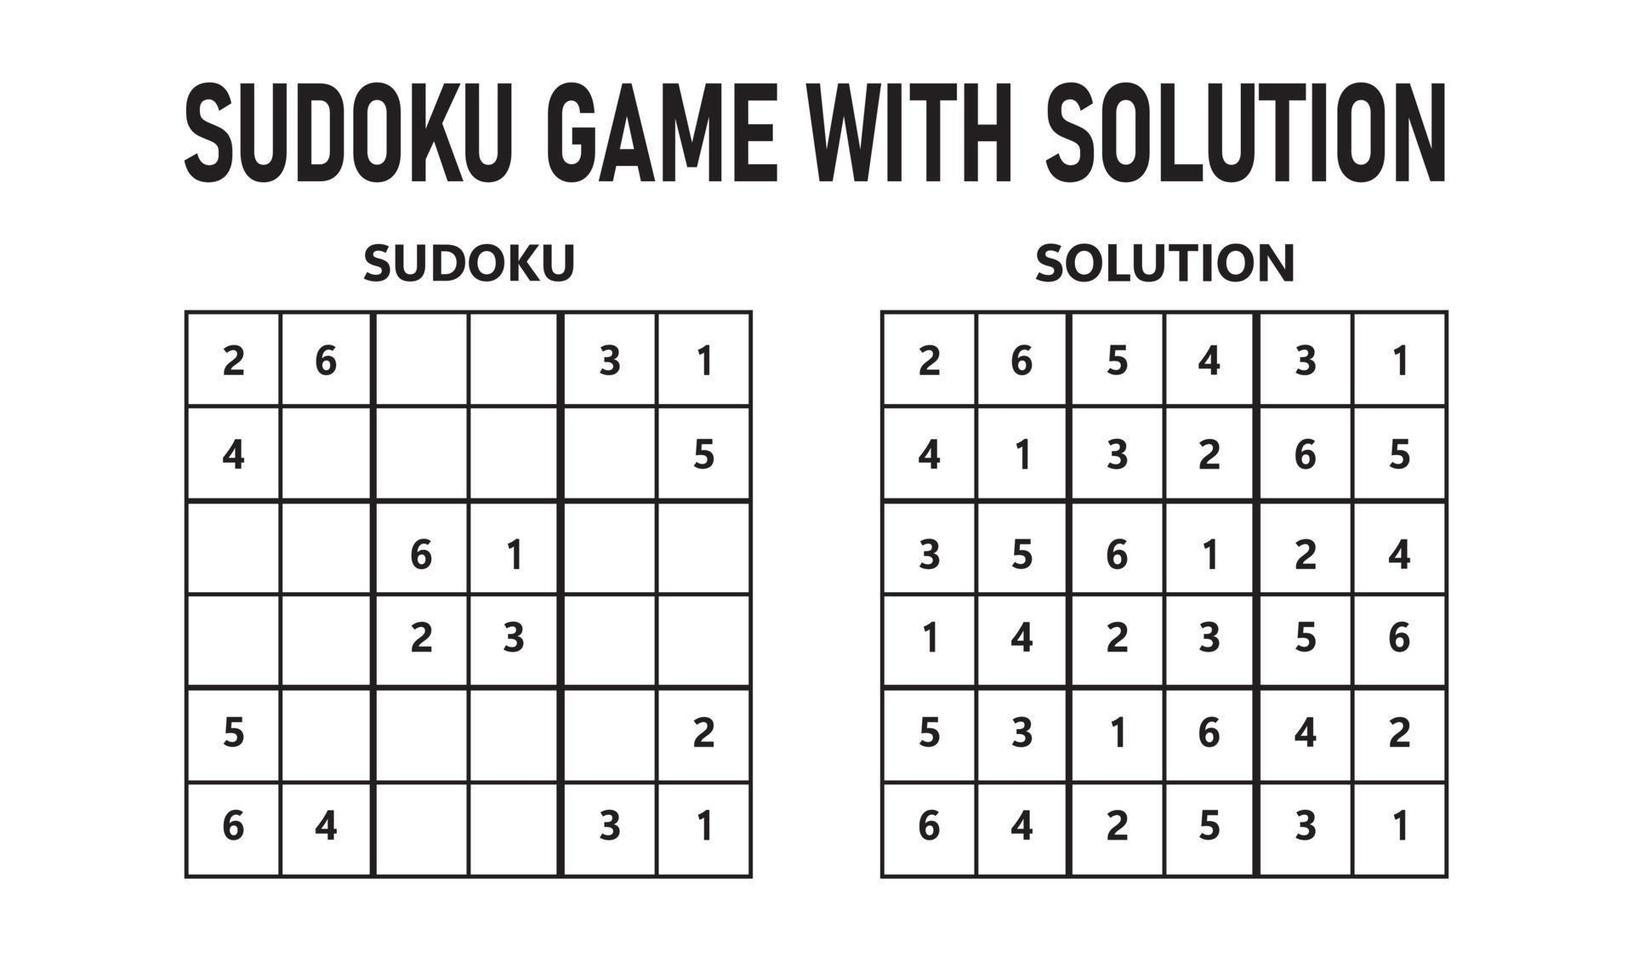 sudoku spel met oplossing. sudoku puzzel spel met nummers. kan worden gebruikt net zo een leerzaam spel. logica puzzel voor kinderen of vrije tijd spel voor volwassenen. vector